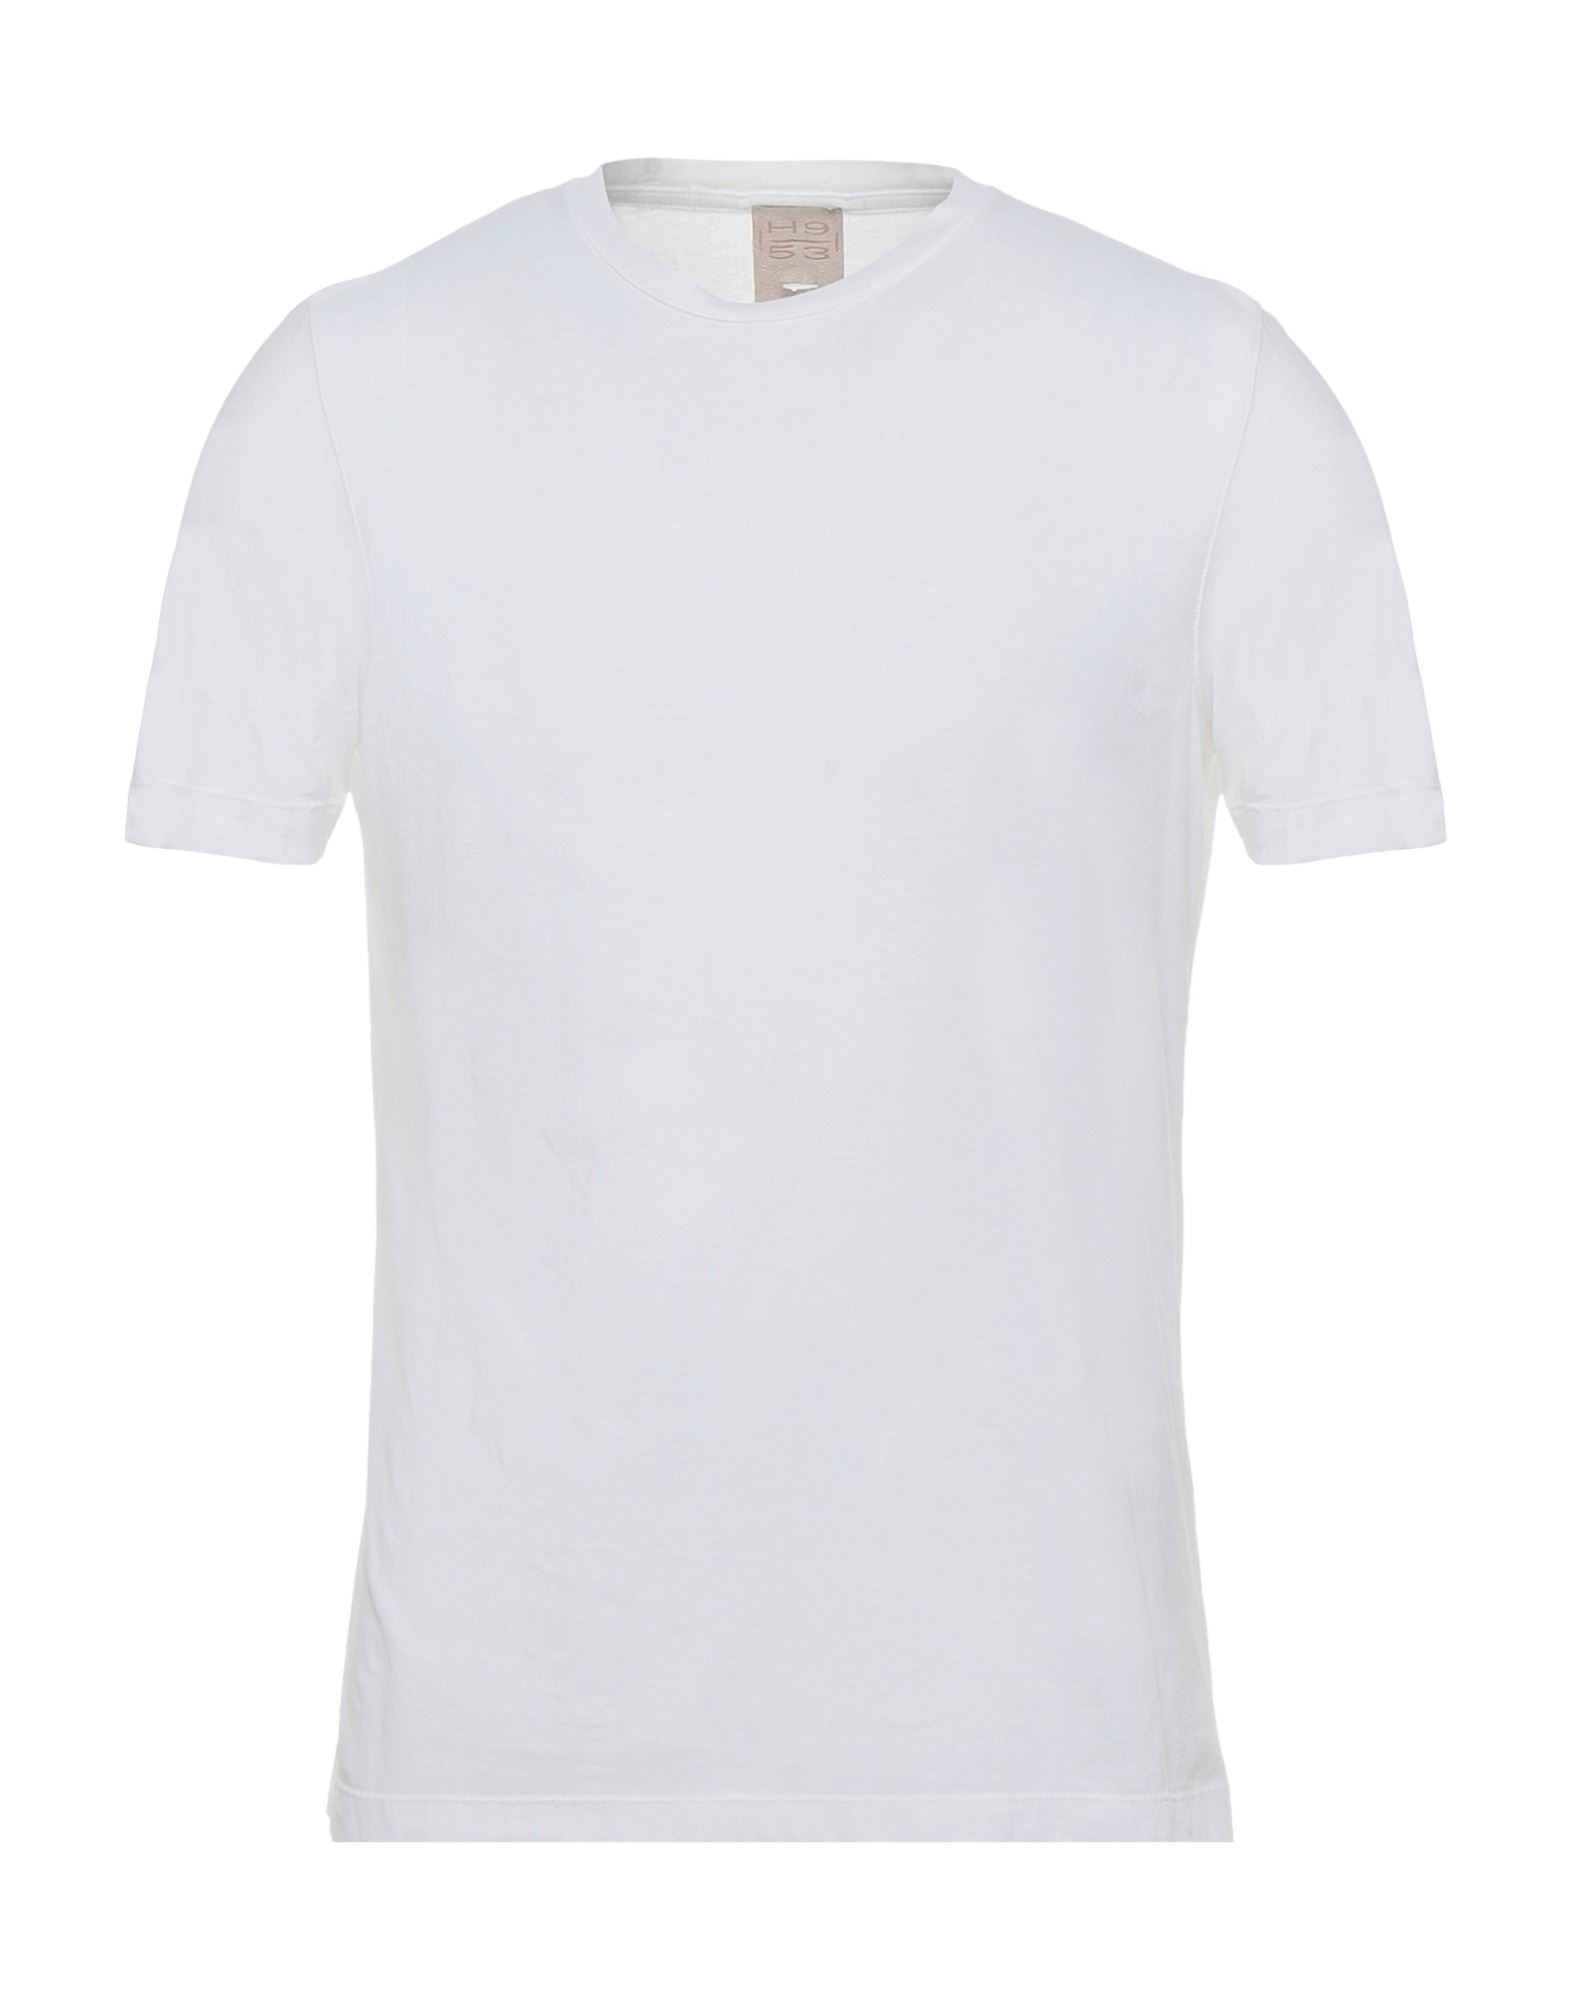 H953 T-shirts Herren Weiß von H953